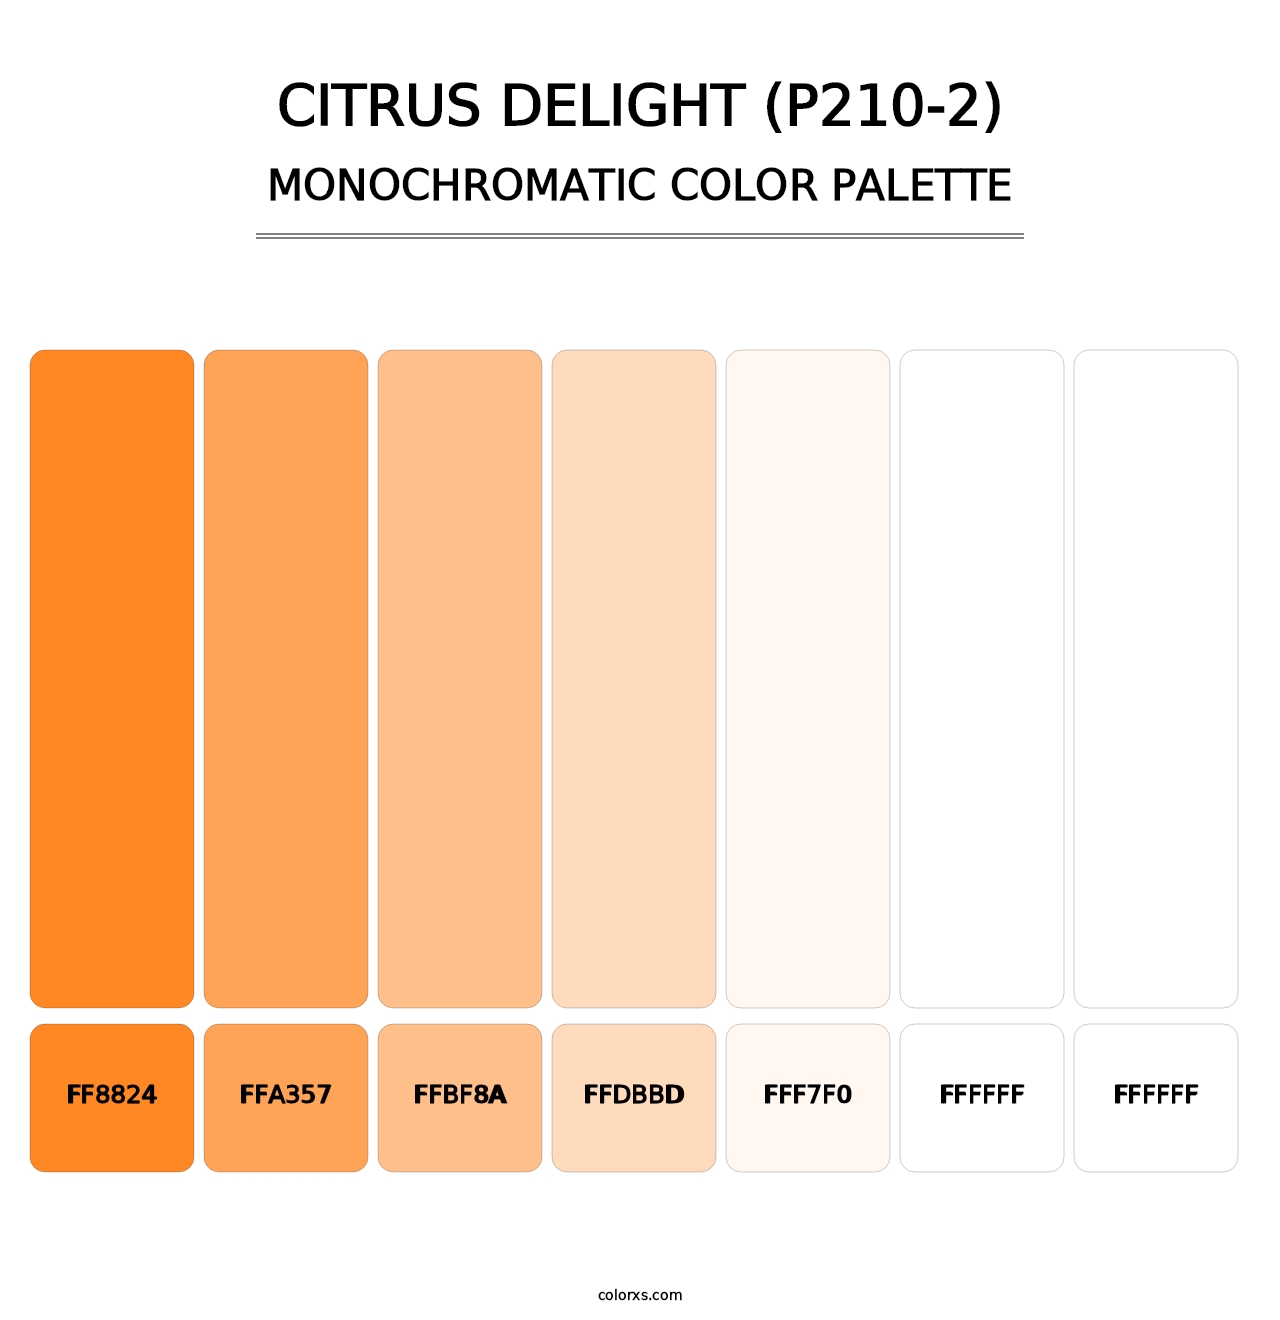 Citrus Delight (P210-2) - Monochromatic Color Palette